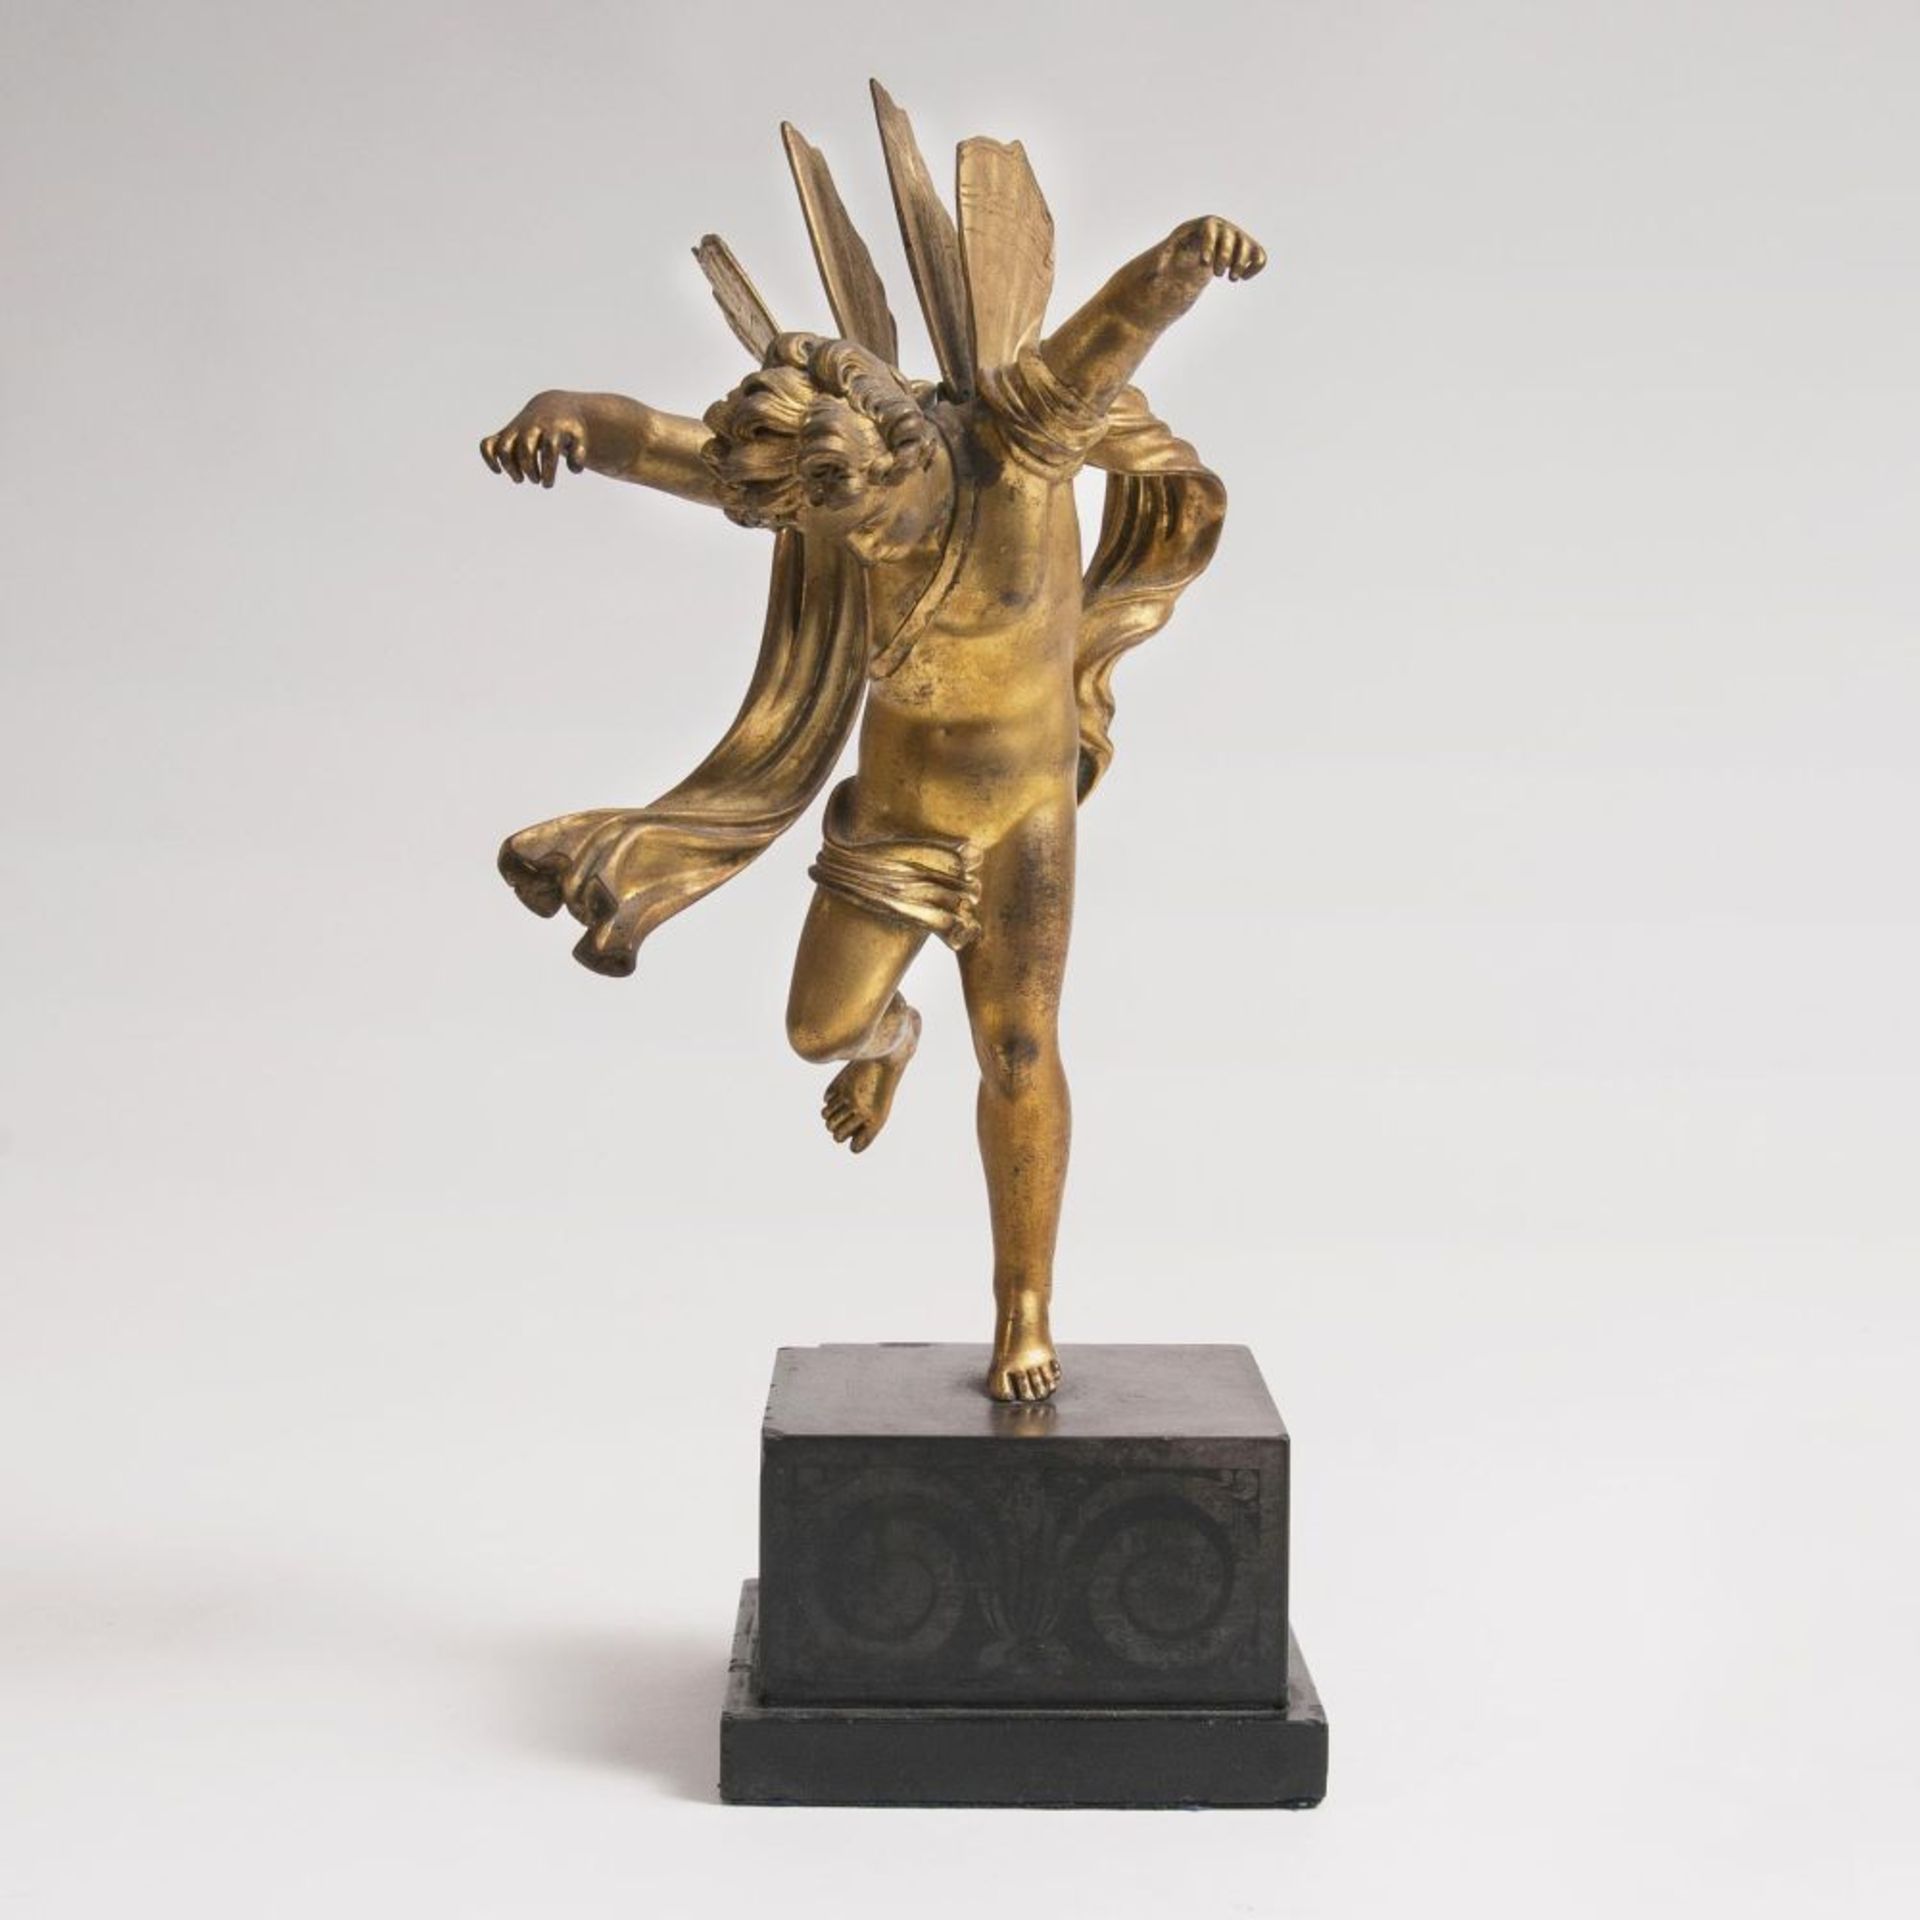 Figur 'Ikarus'Um 1800. Bronze mit Feuervergoldung. Mit erhobenen Armen und wehender Tuchdraperie.